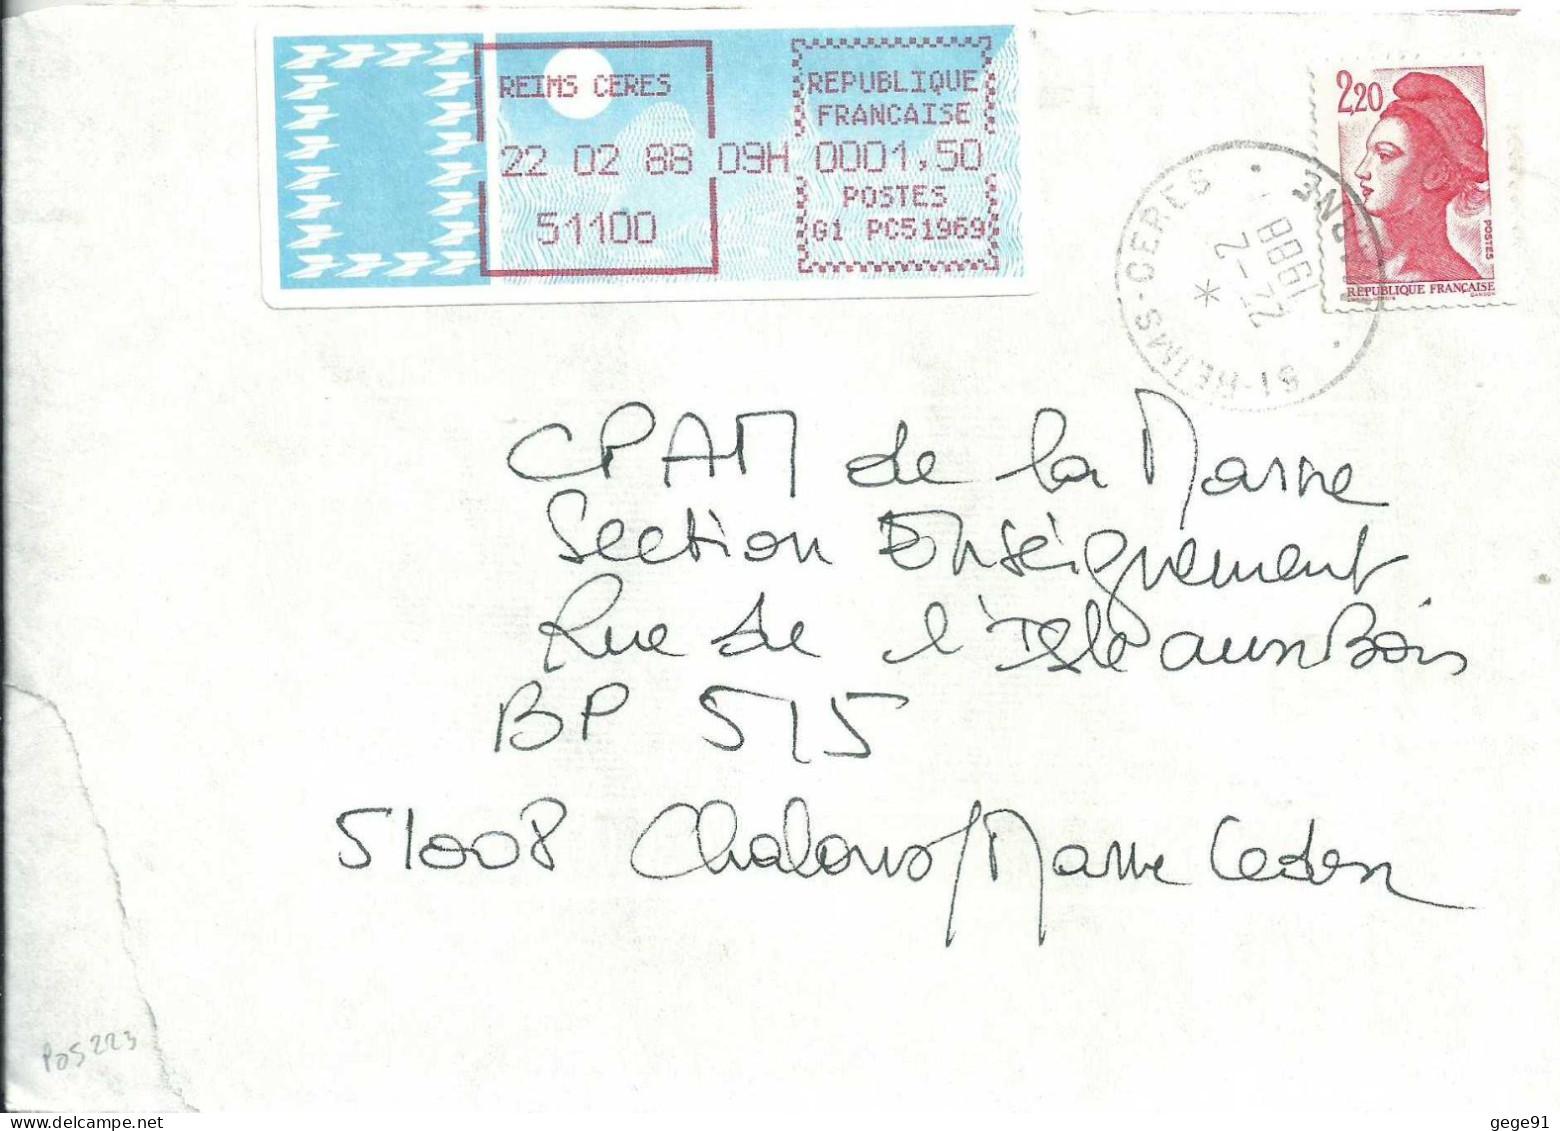 Vignette D'affranchissement - MOG - Reims Céres - Marne - Complément D'affranchissement - 1985 Papier « Carrier »